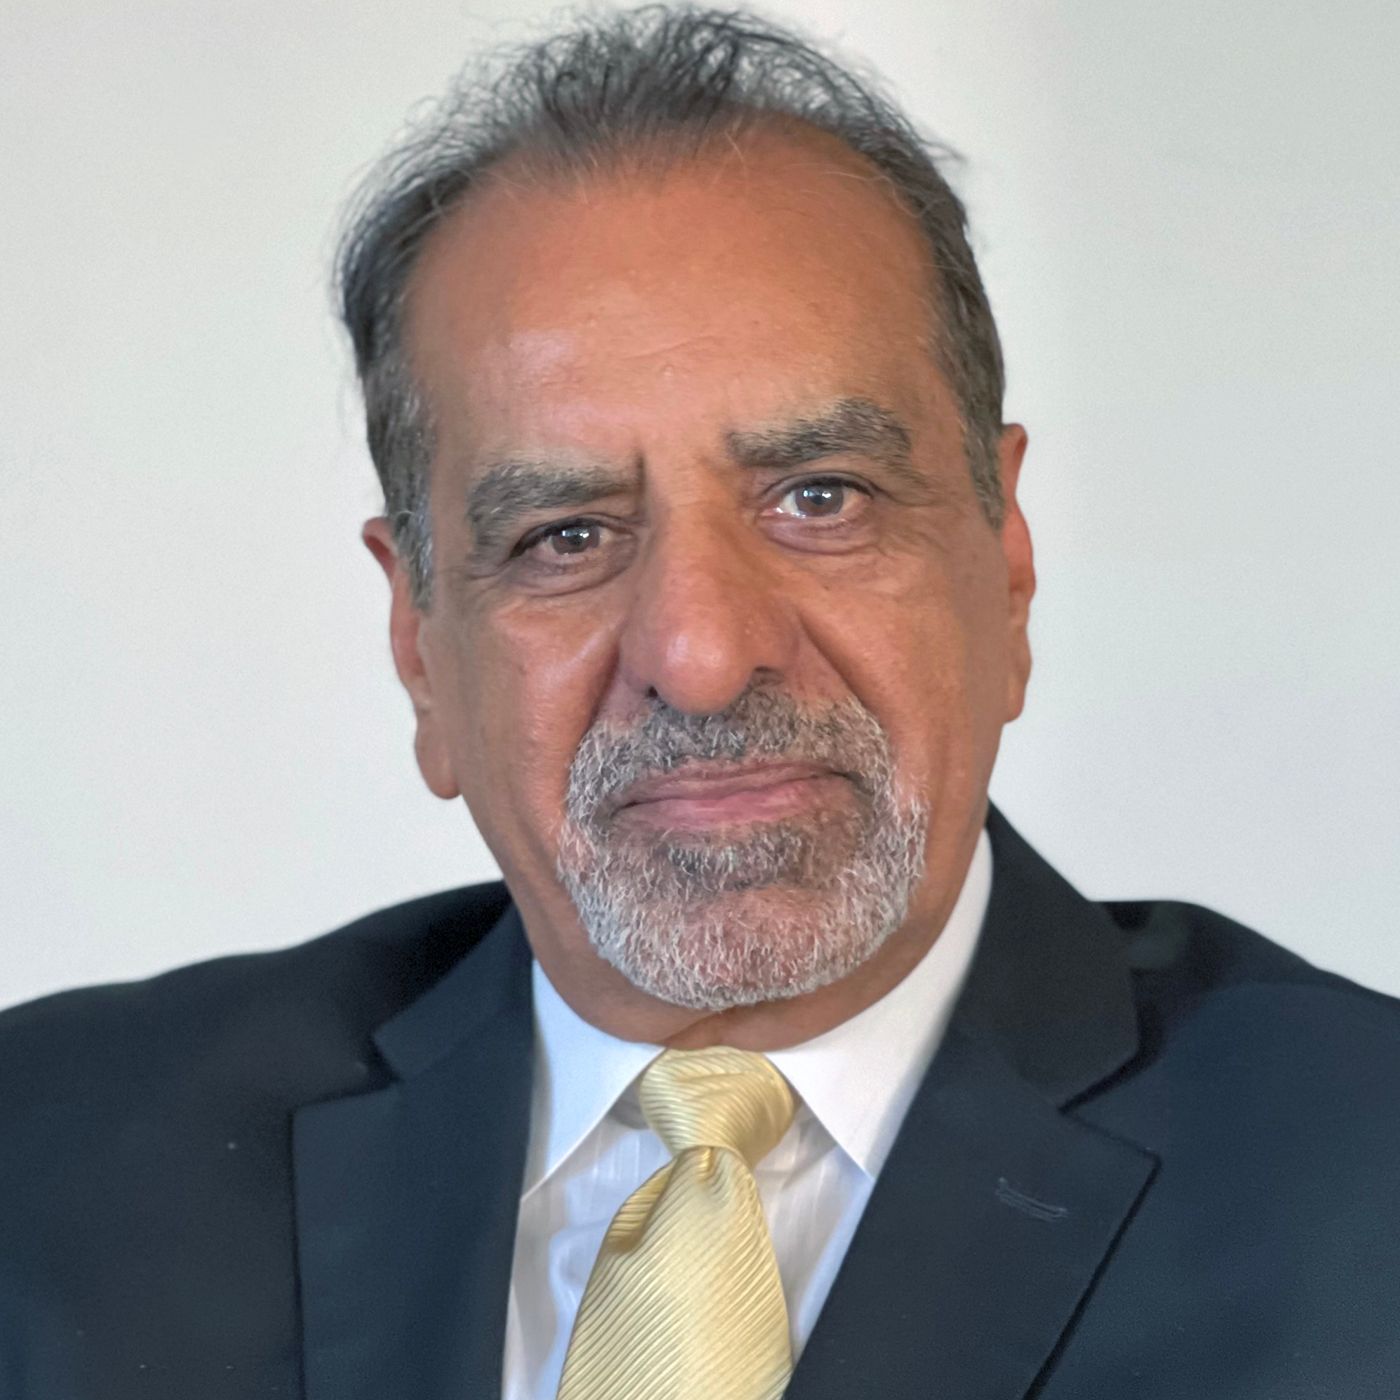 Kavi Raz Cpics CEO